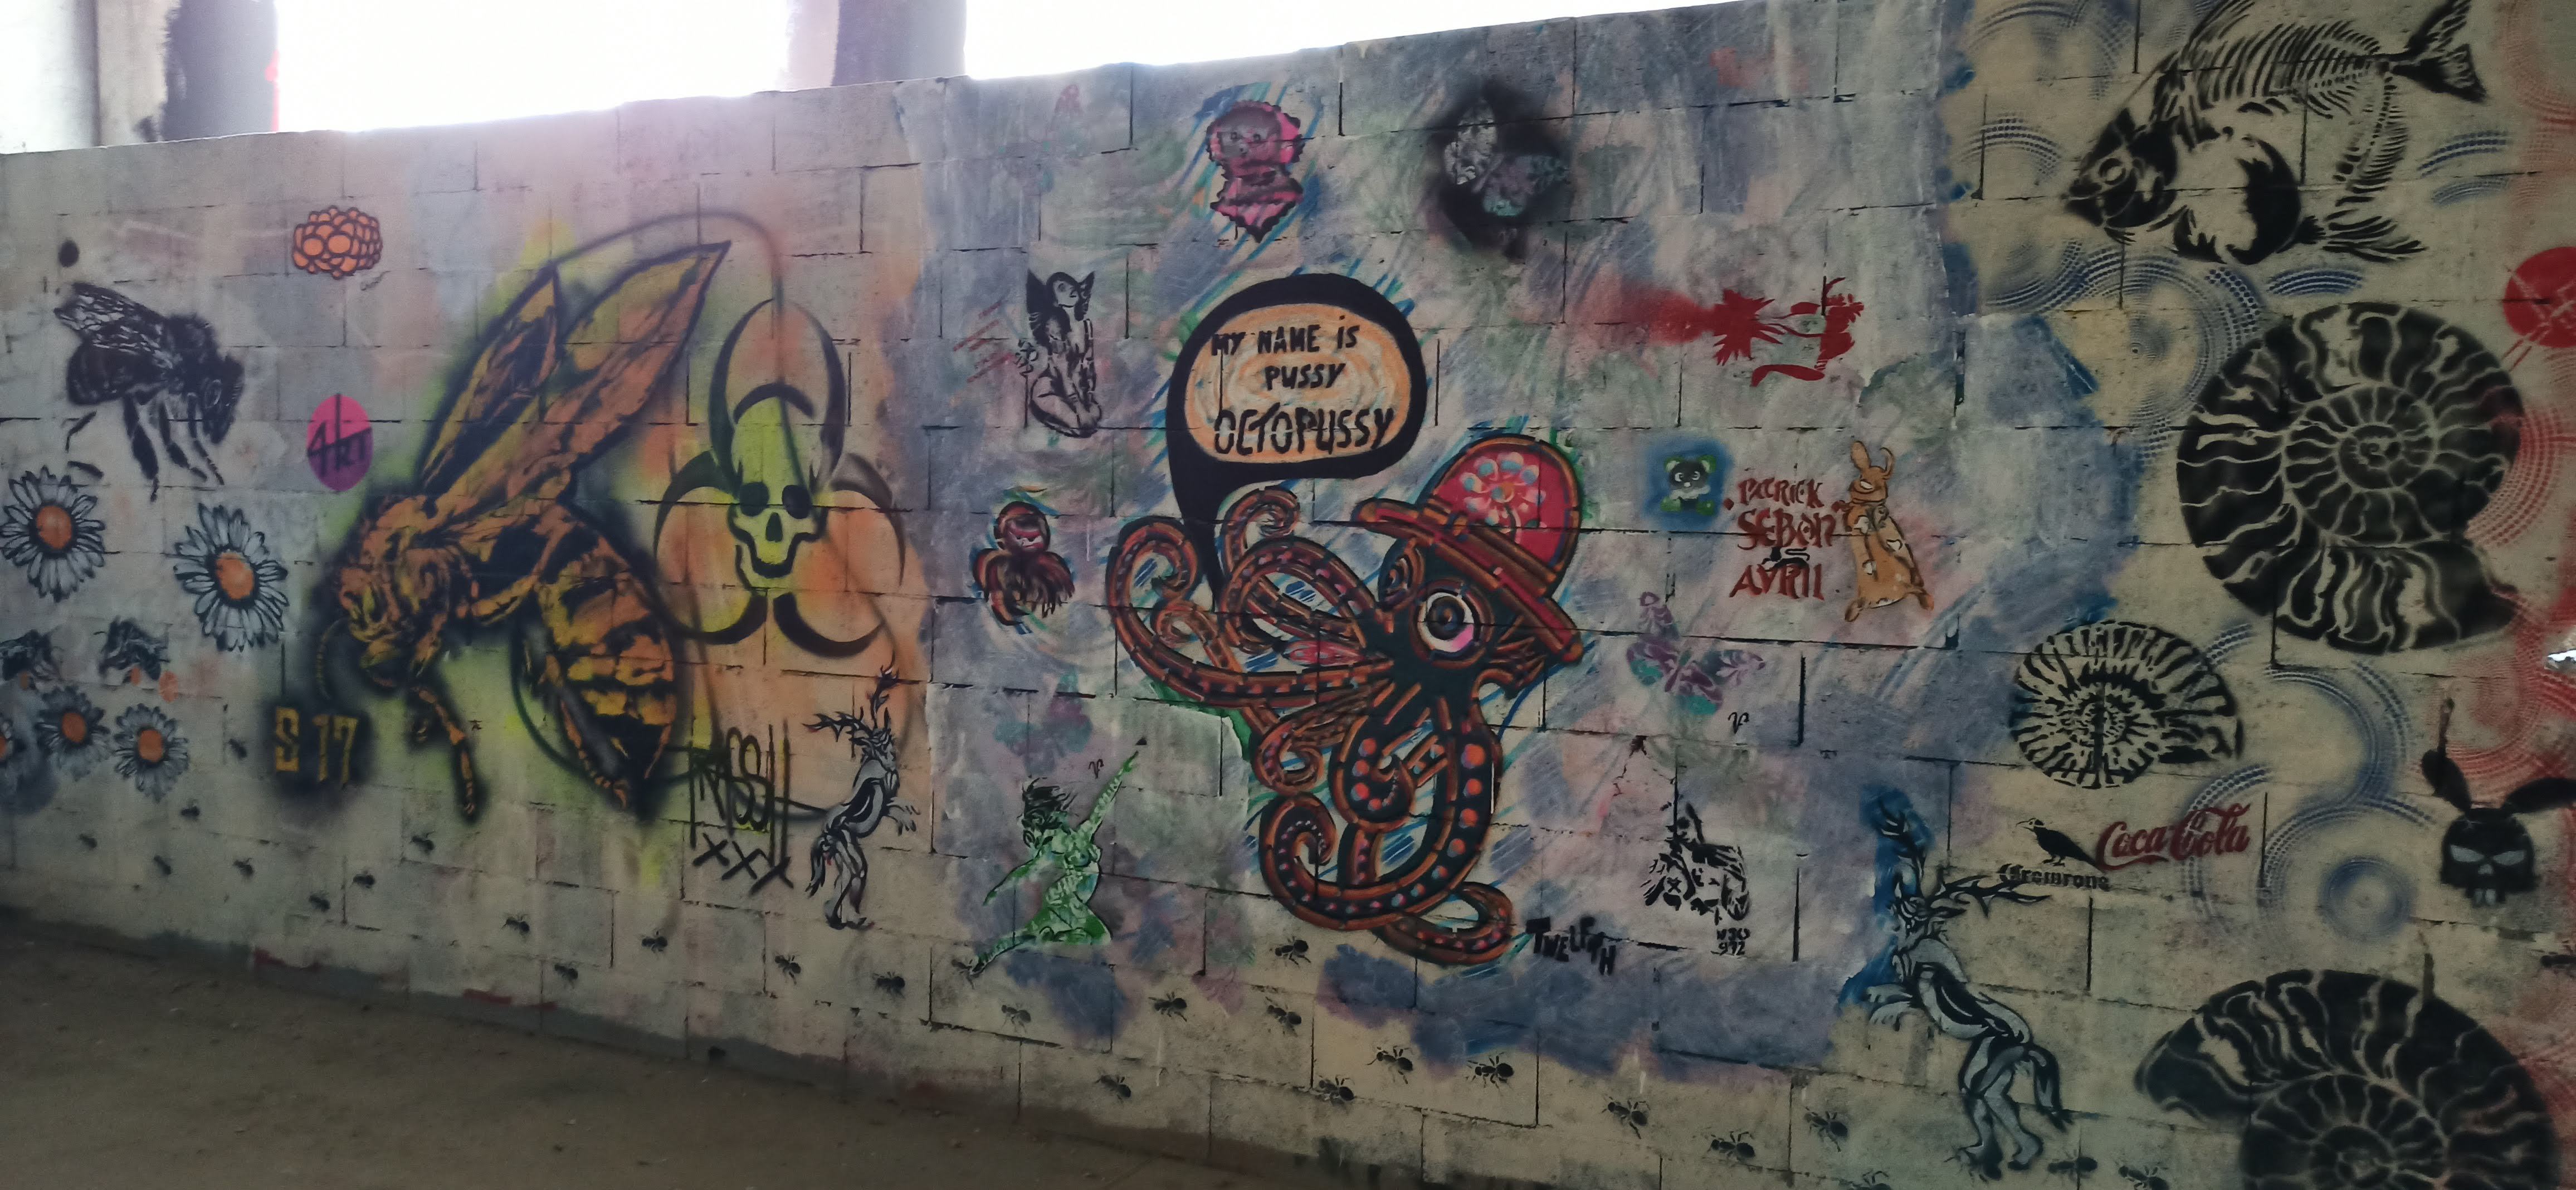 Graffiti 5491 My name is pussy, octopussy capturé par Rabot à Paris France